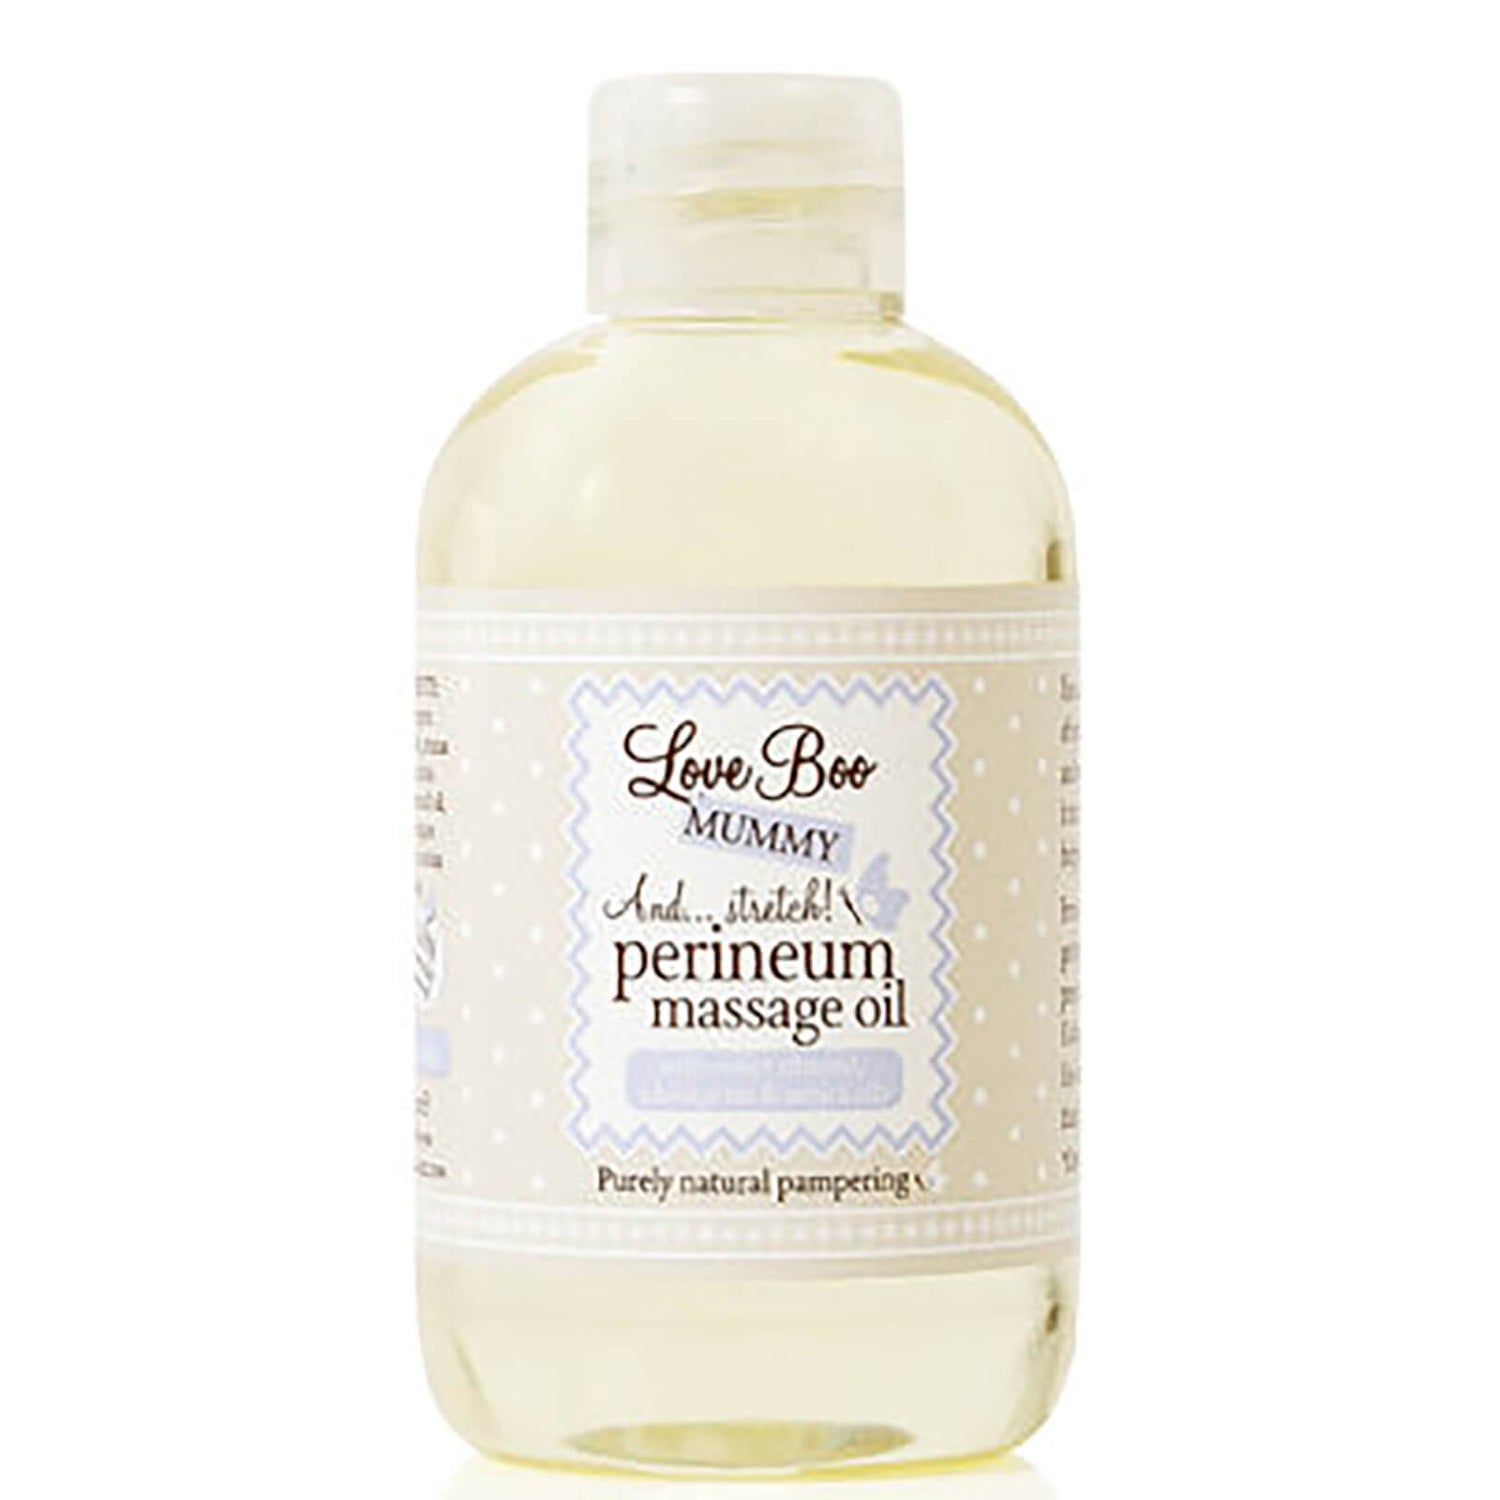 Love Boo Perineum Massage Oil (100 ml)